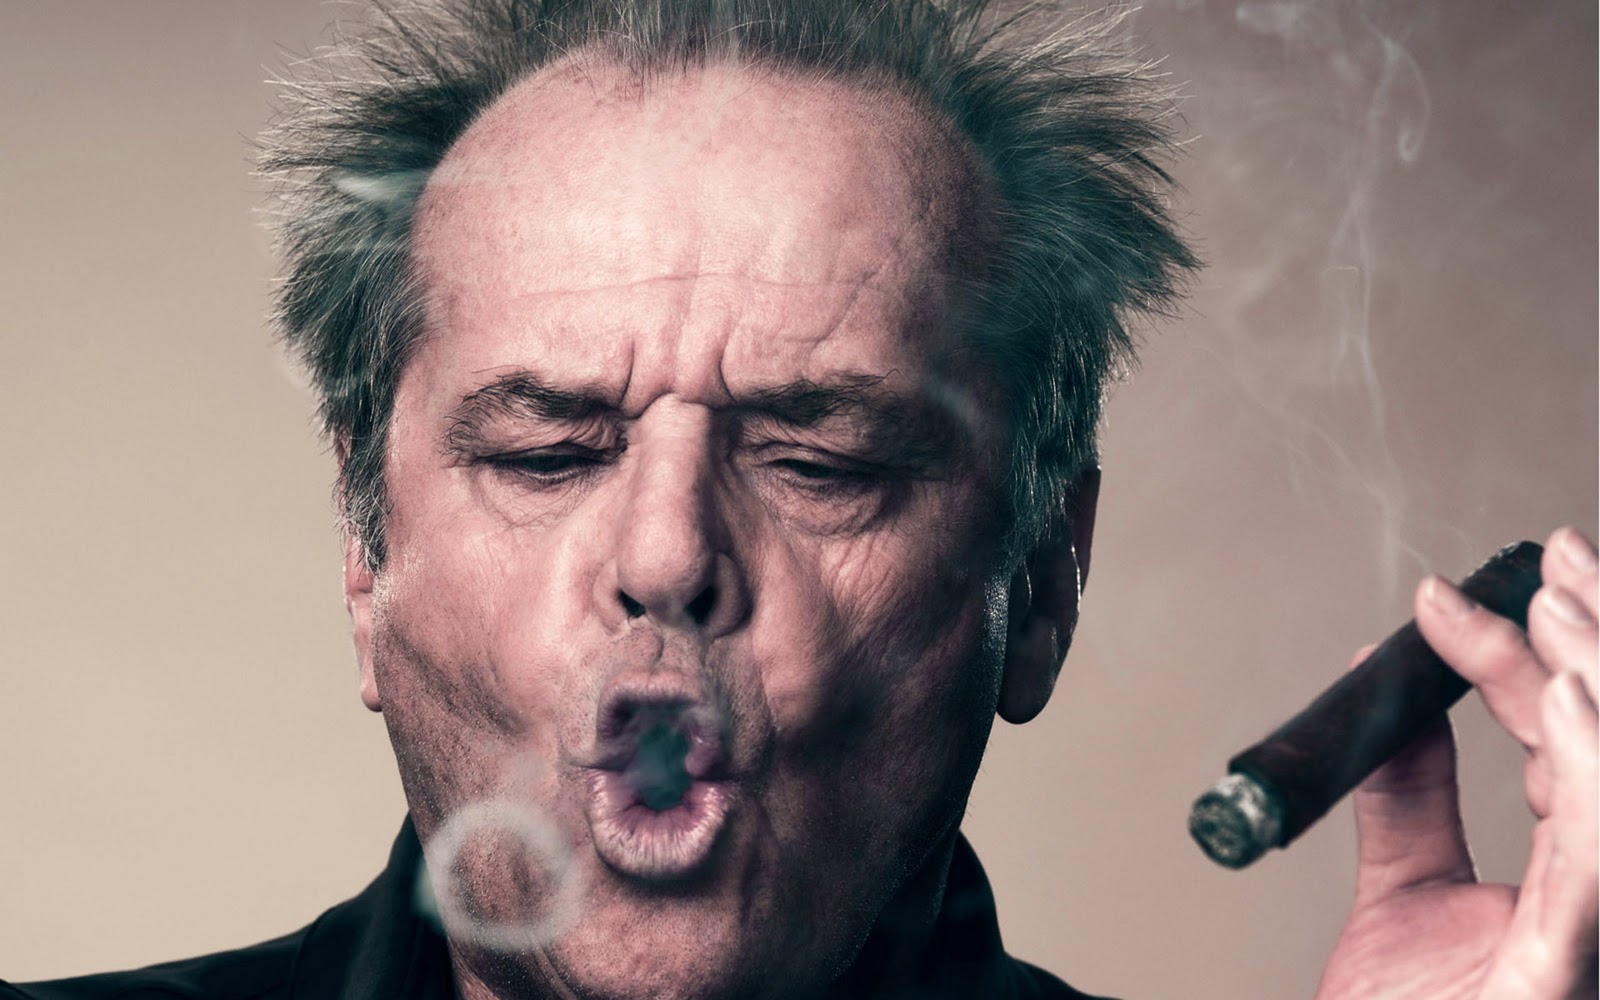 Jack Nicholson ÎµÎ¯Ï‡Îµ Î­Î½Î± Ï…Ï€ÏŒÎ³ÎµÎ¹Î¿ Ï„Î¿ÏÎ½ÎµÎ» Ï€Î¿Ï… ...